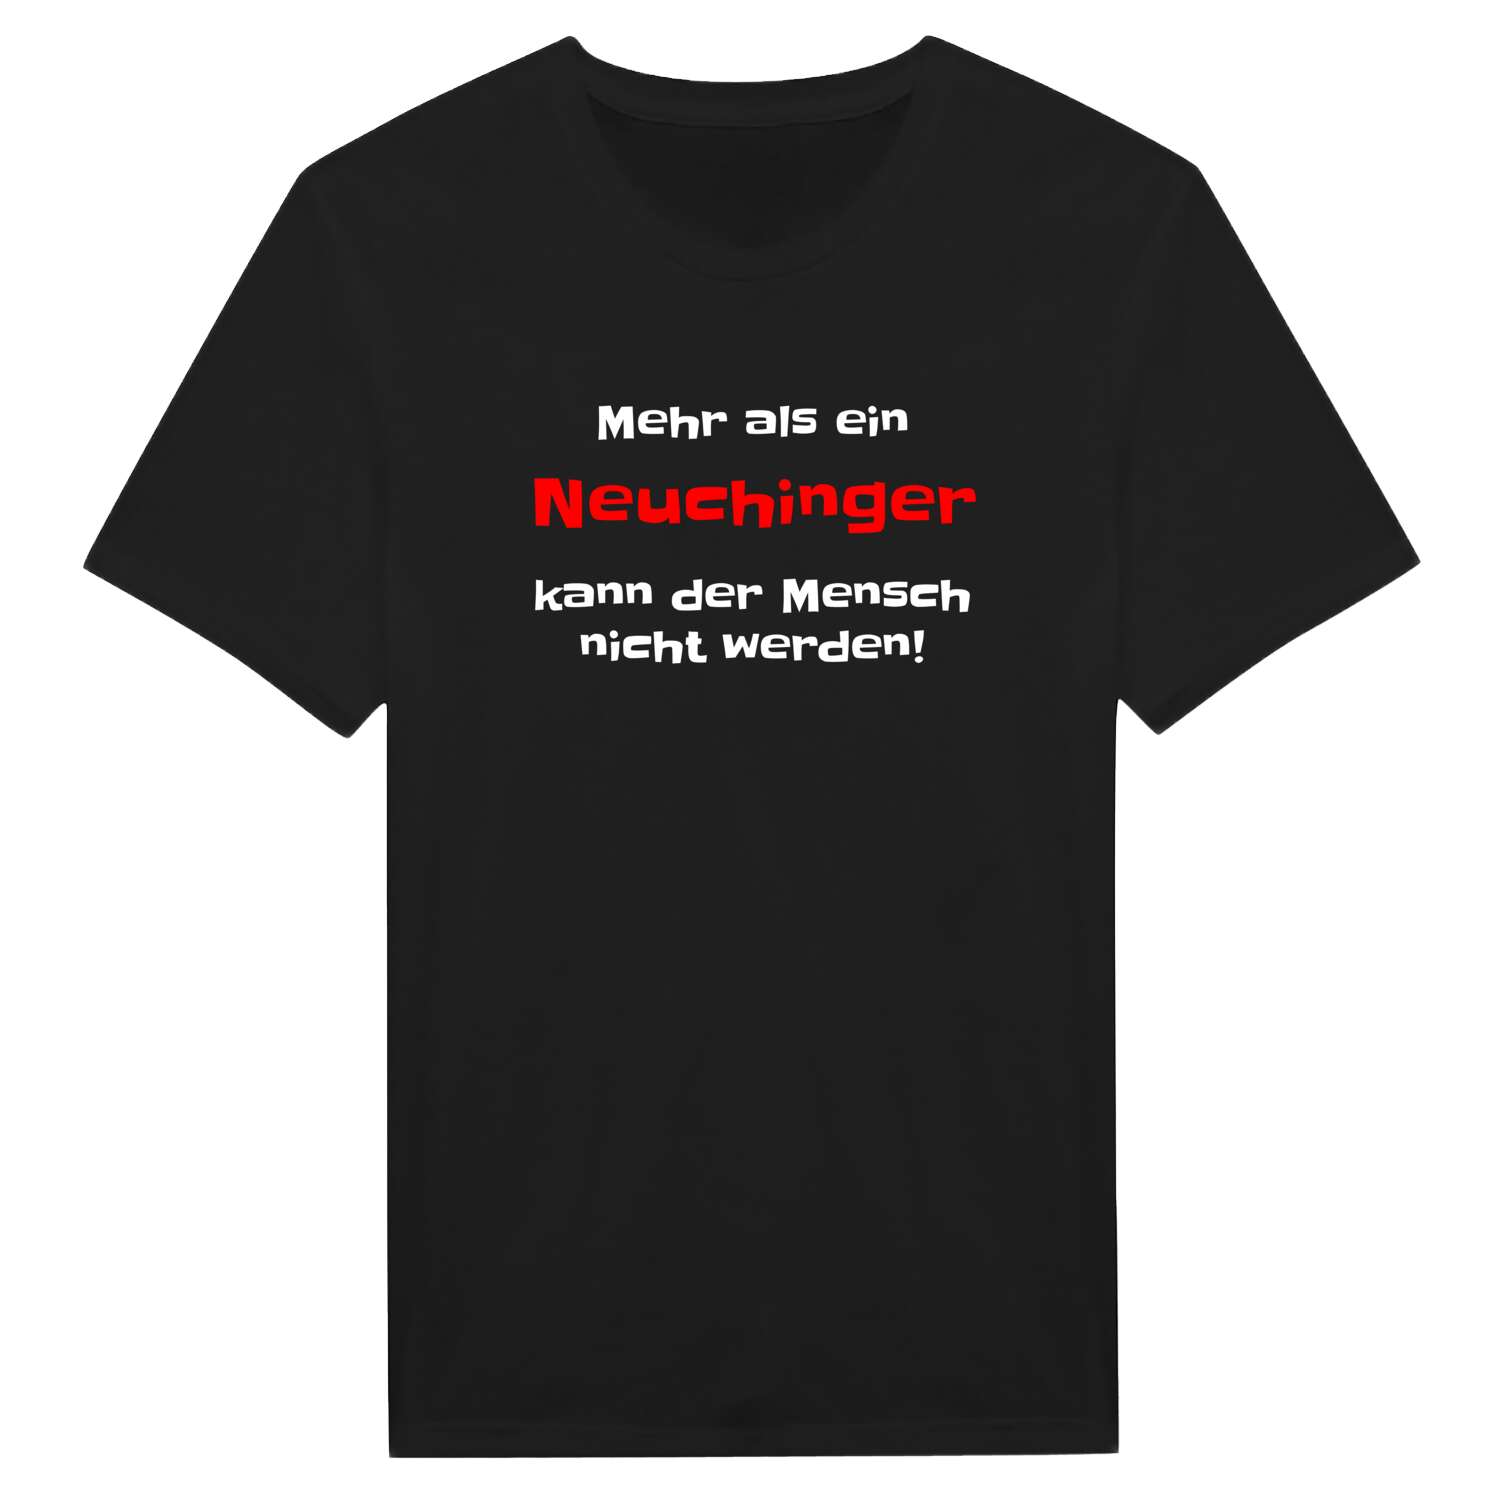 Neuching T-Shirt »Mehr als ein«